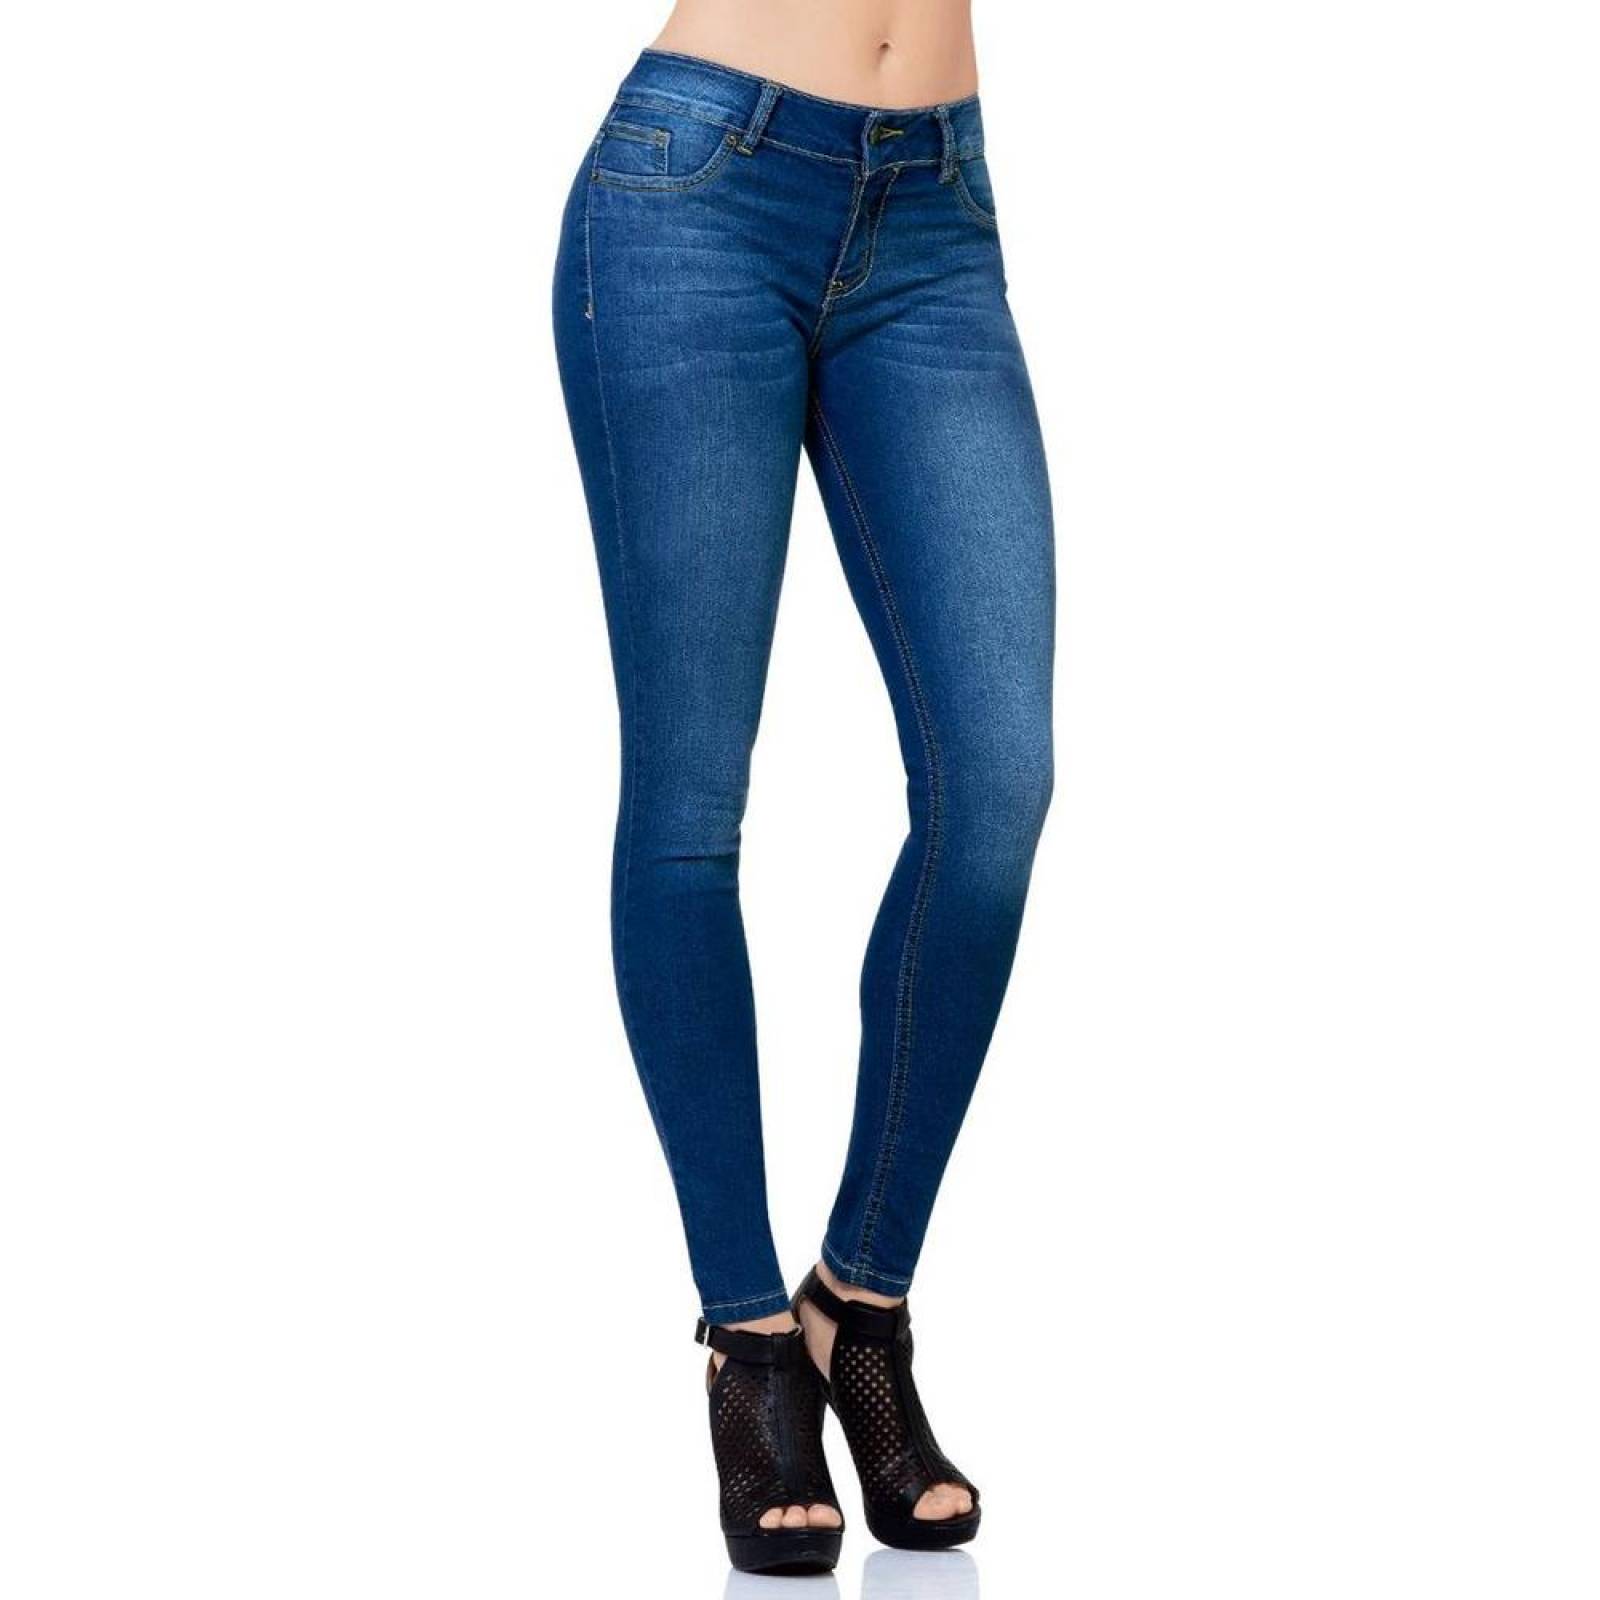 Jeans Básico Mujer Salvaje Tentación Stone 63100133 Mezclilla Stretch 